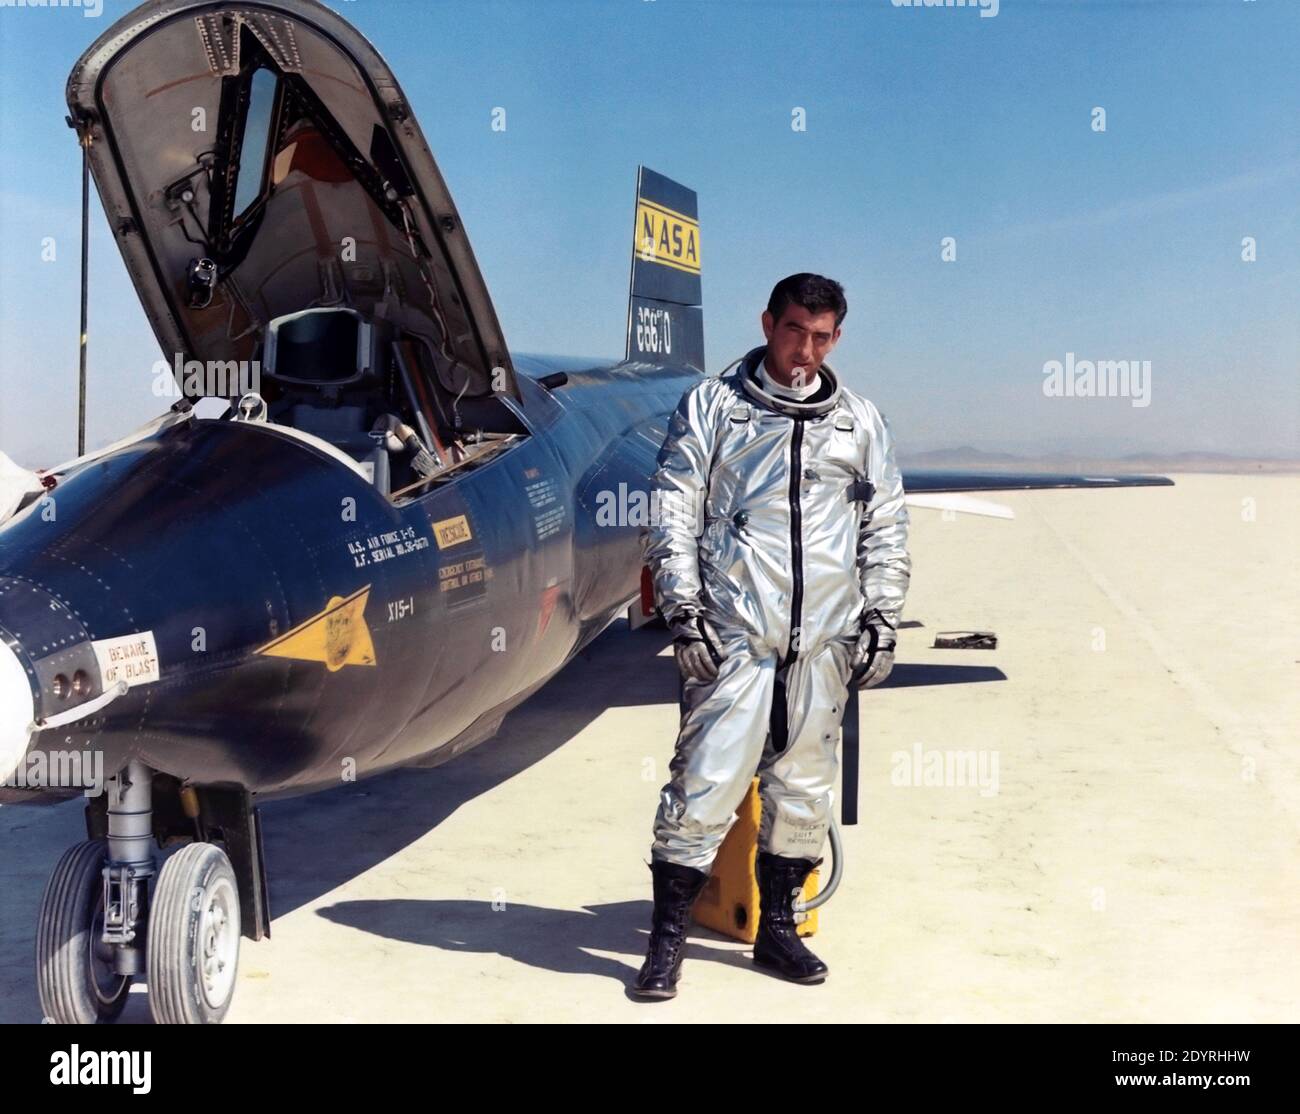 Michael J. Adams mit X-15 März 22, Luftwaffe Testpilot Maj. Michael J. Adams steht neben X-15 Schiff Nummer eins. Adams wurde für die X-15-Programm im Jahr 1966 ausgewählt und machte seinen ersten Flug am 6. Oktober 1966. Am 15. November 1967, Adams machte seinen siebten und letzten X-15 Flug. Die X-15 startete von der B-52, aber während des Aufstiegs ein elektrisches Problem betraf das Steuersystem der X-15. Das Flugzeug stürzte nordwestlich von Cuddeback Lake, Kalifornien, ab und verursachte den Tod von Adams. Er wurde posthum Air Force Astronaut Flügel ausgezeichnet, weil sein letzter Flug zu überschreiten Stockfoto